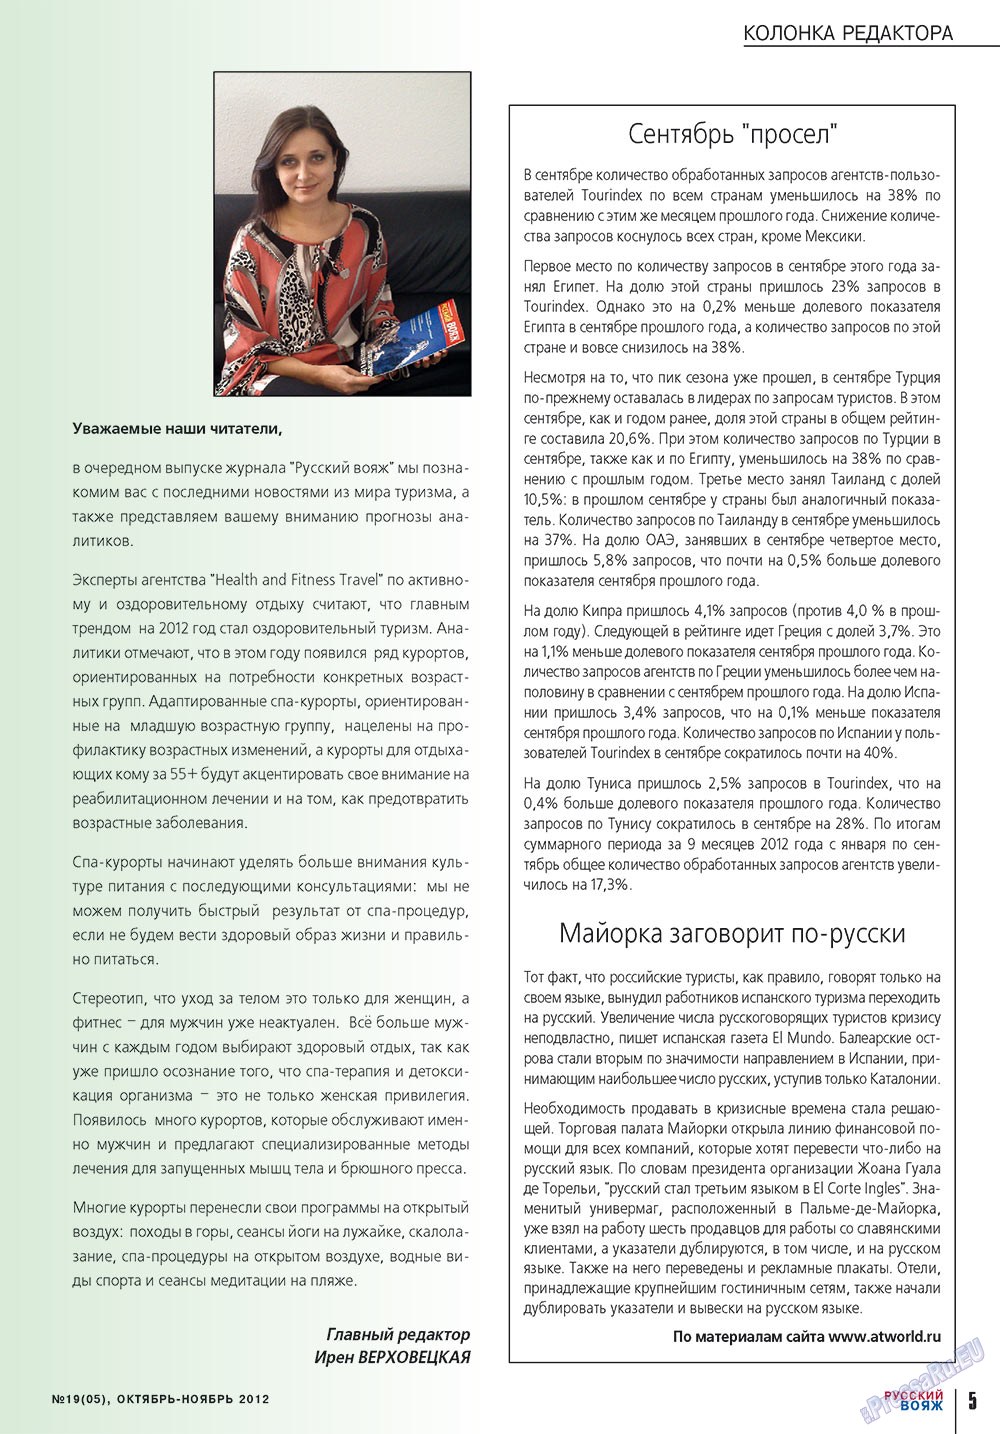 Русский вояж (журнал). 2012 год, номер 19, стр. 5